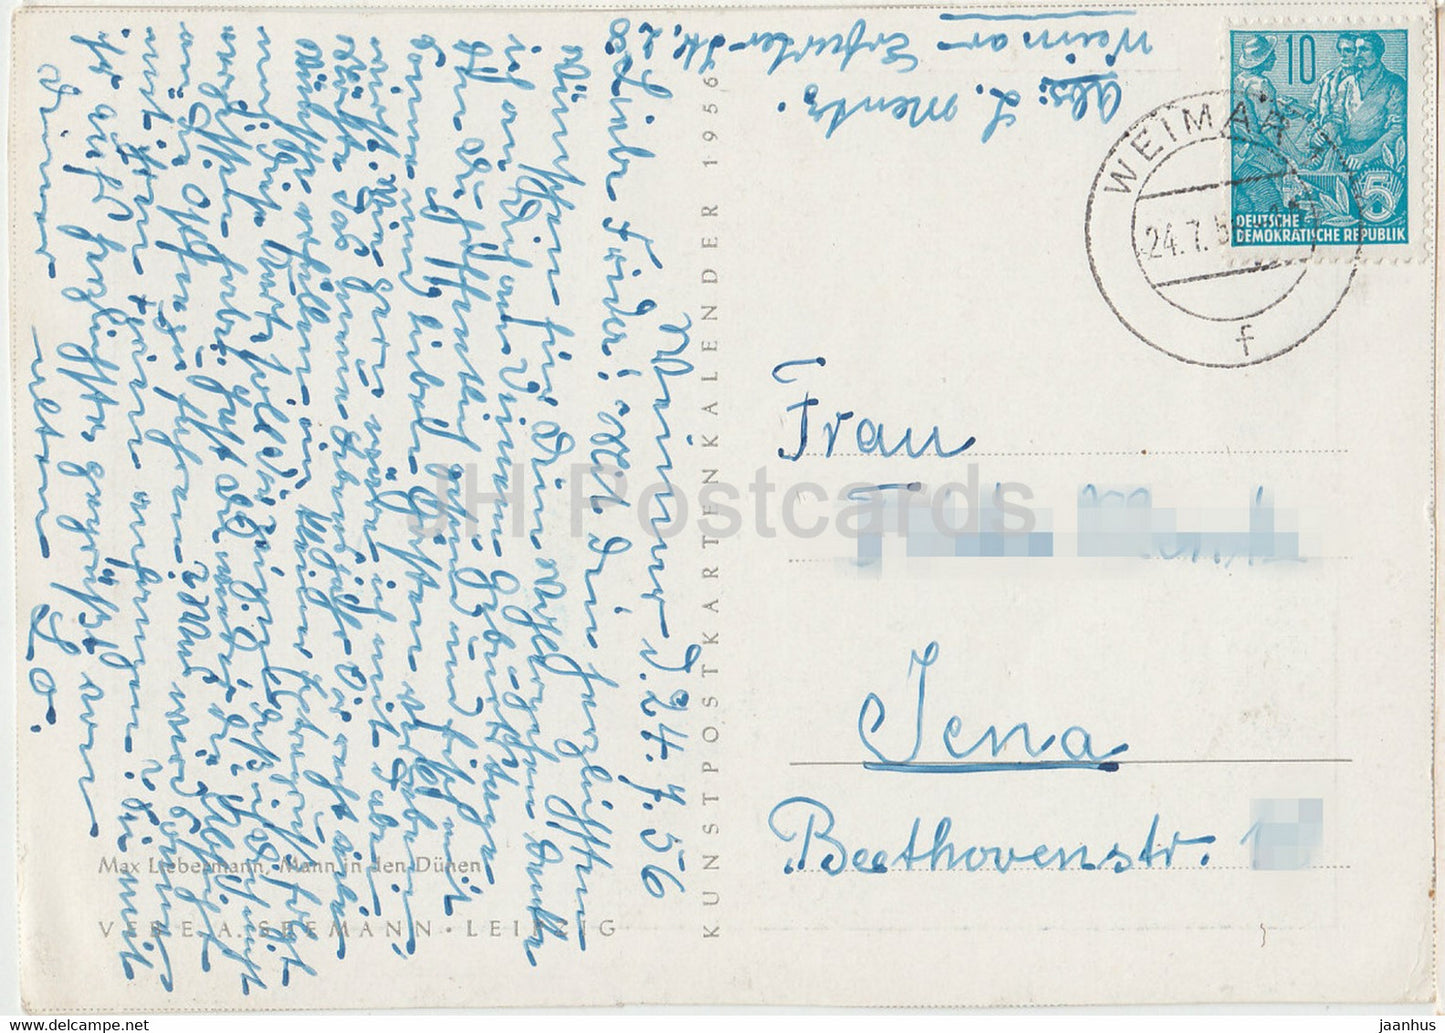 tableau de Max Liebermann - Mann in den Dunen - Art allemand - 1956 - Allemagne - utilisé